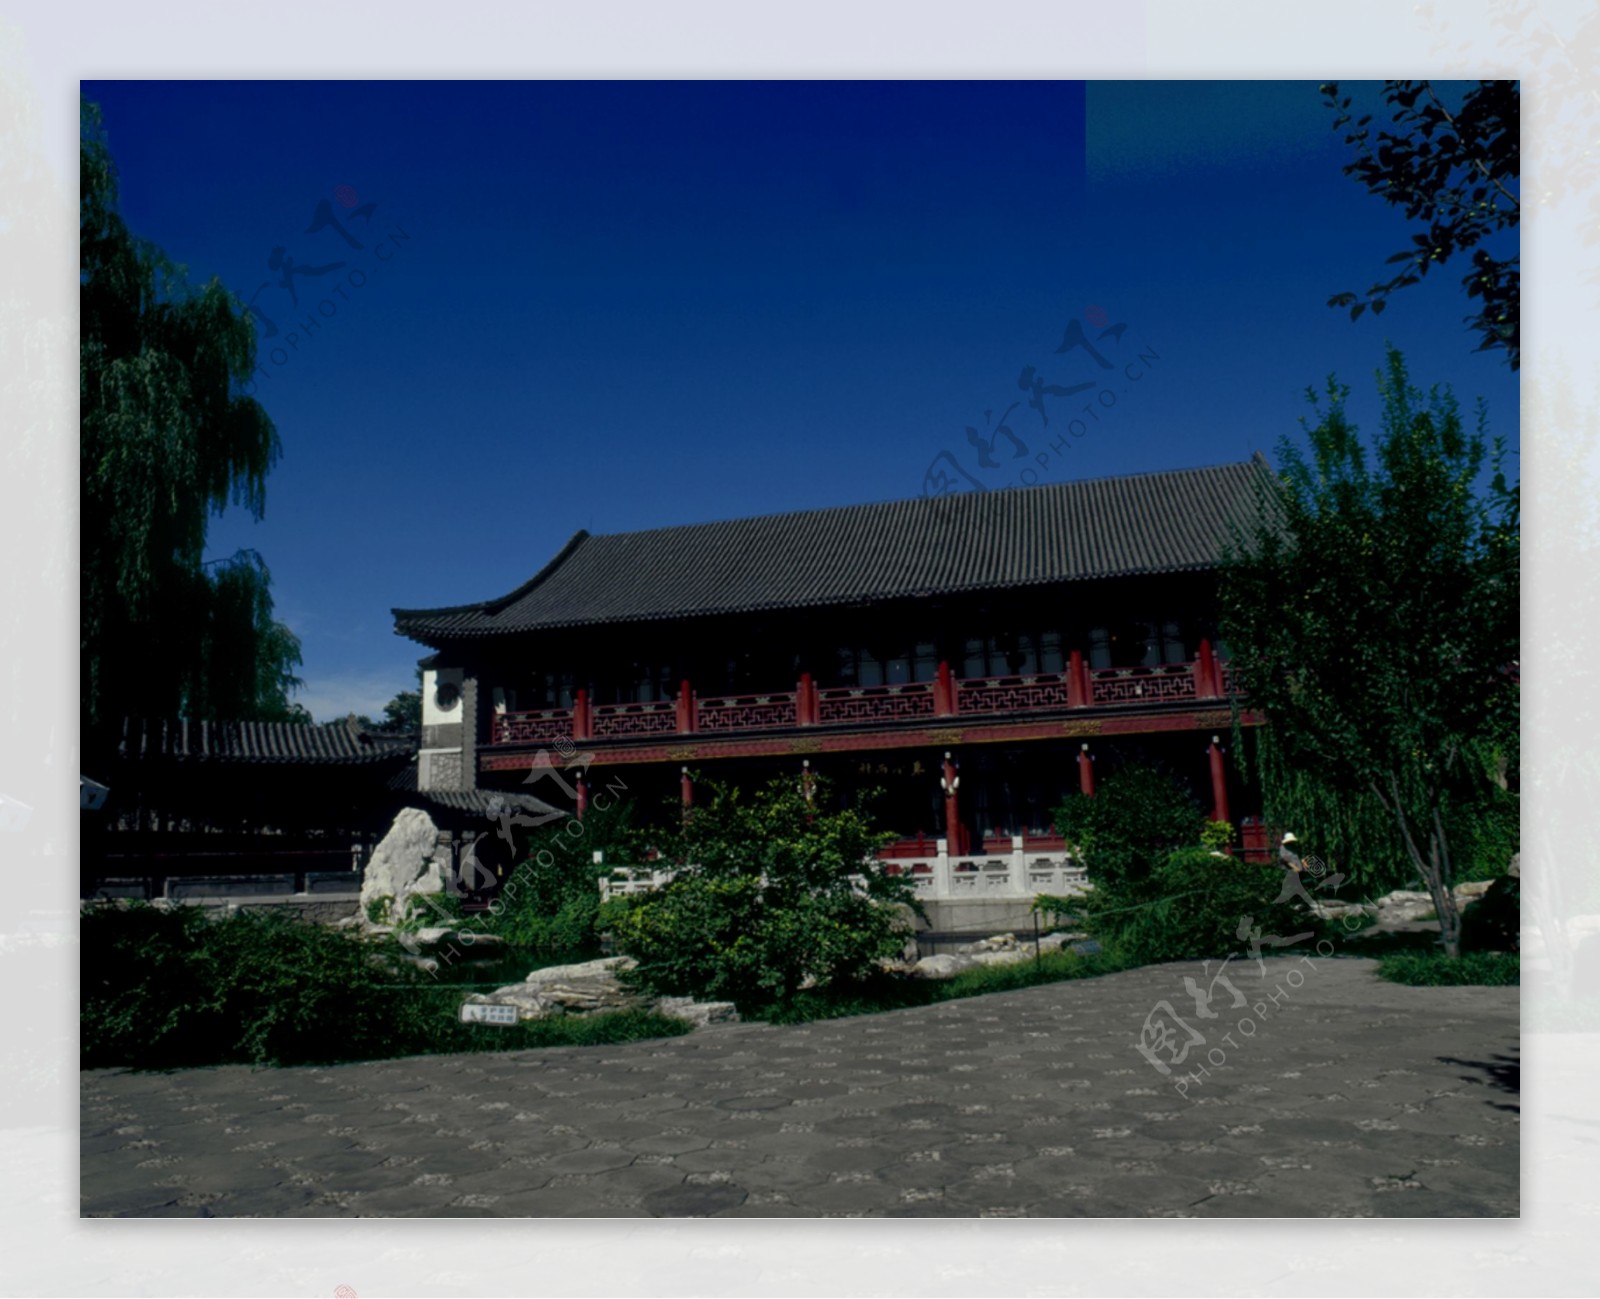 北京皇家园林明清园林建筑风格蓝天古木摄影